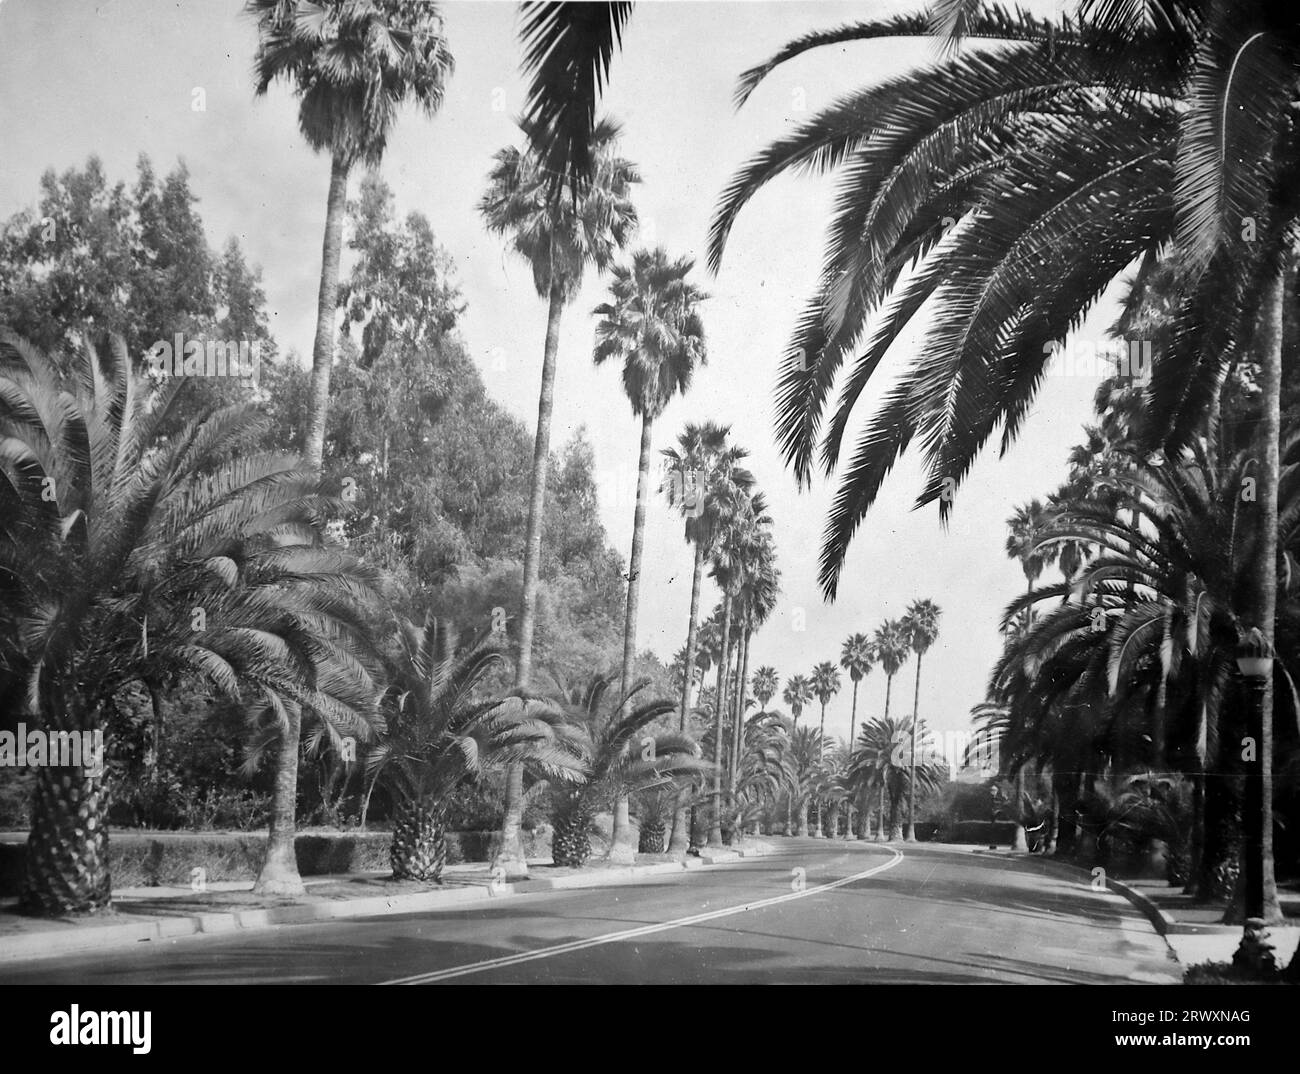 Eine Straße in Hollywood mit Palmen auf beiden Seiten. Seltenes Foto: Aus einer Sammlung eines unbekannten britischen Soldaten über die No. 1 Composite Demonstration, AA Battery, Tour durch die USA, vom 11. Juli 1943. Dies ist eines von mehr als hundert Bildern in der Sammlung, die im Durchschnitt etwa 4 x 3 Zoll groß waren. Stockfoto